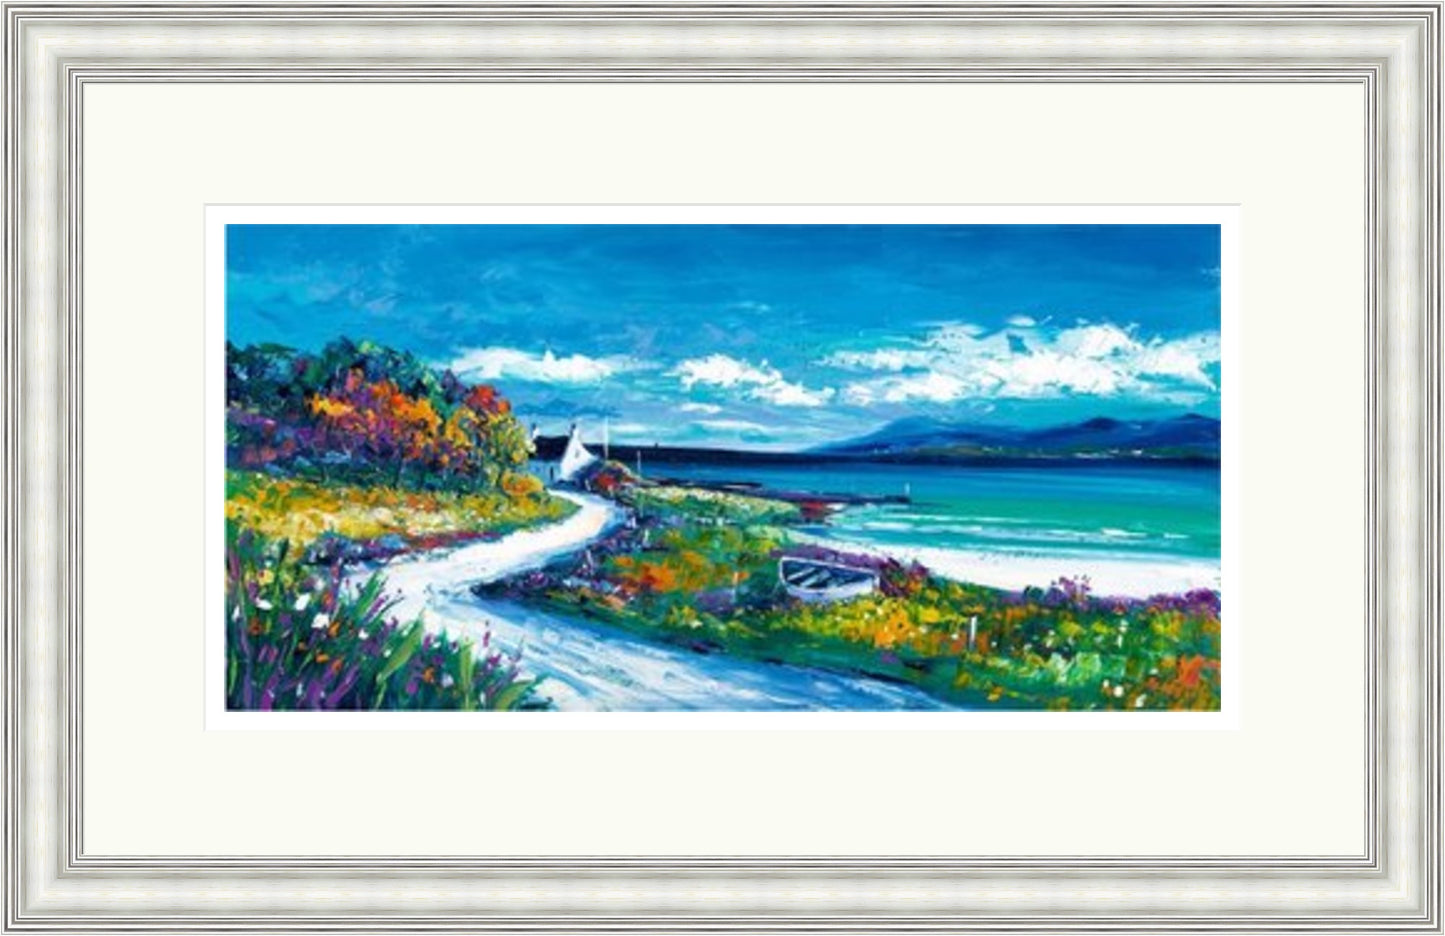 Sunlit Bay, Isle of Skye by Jean Feeney